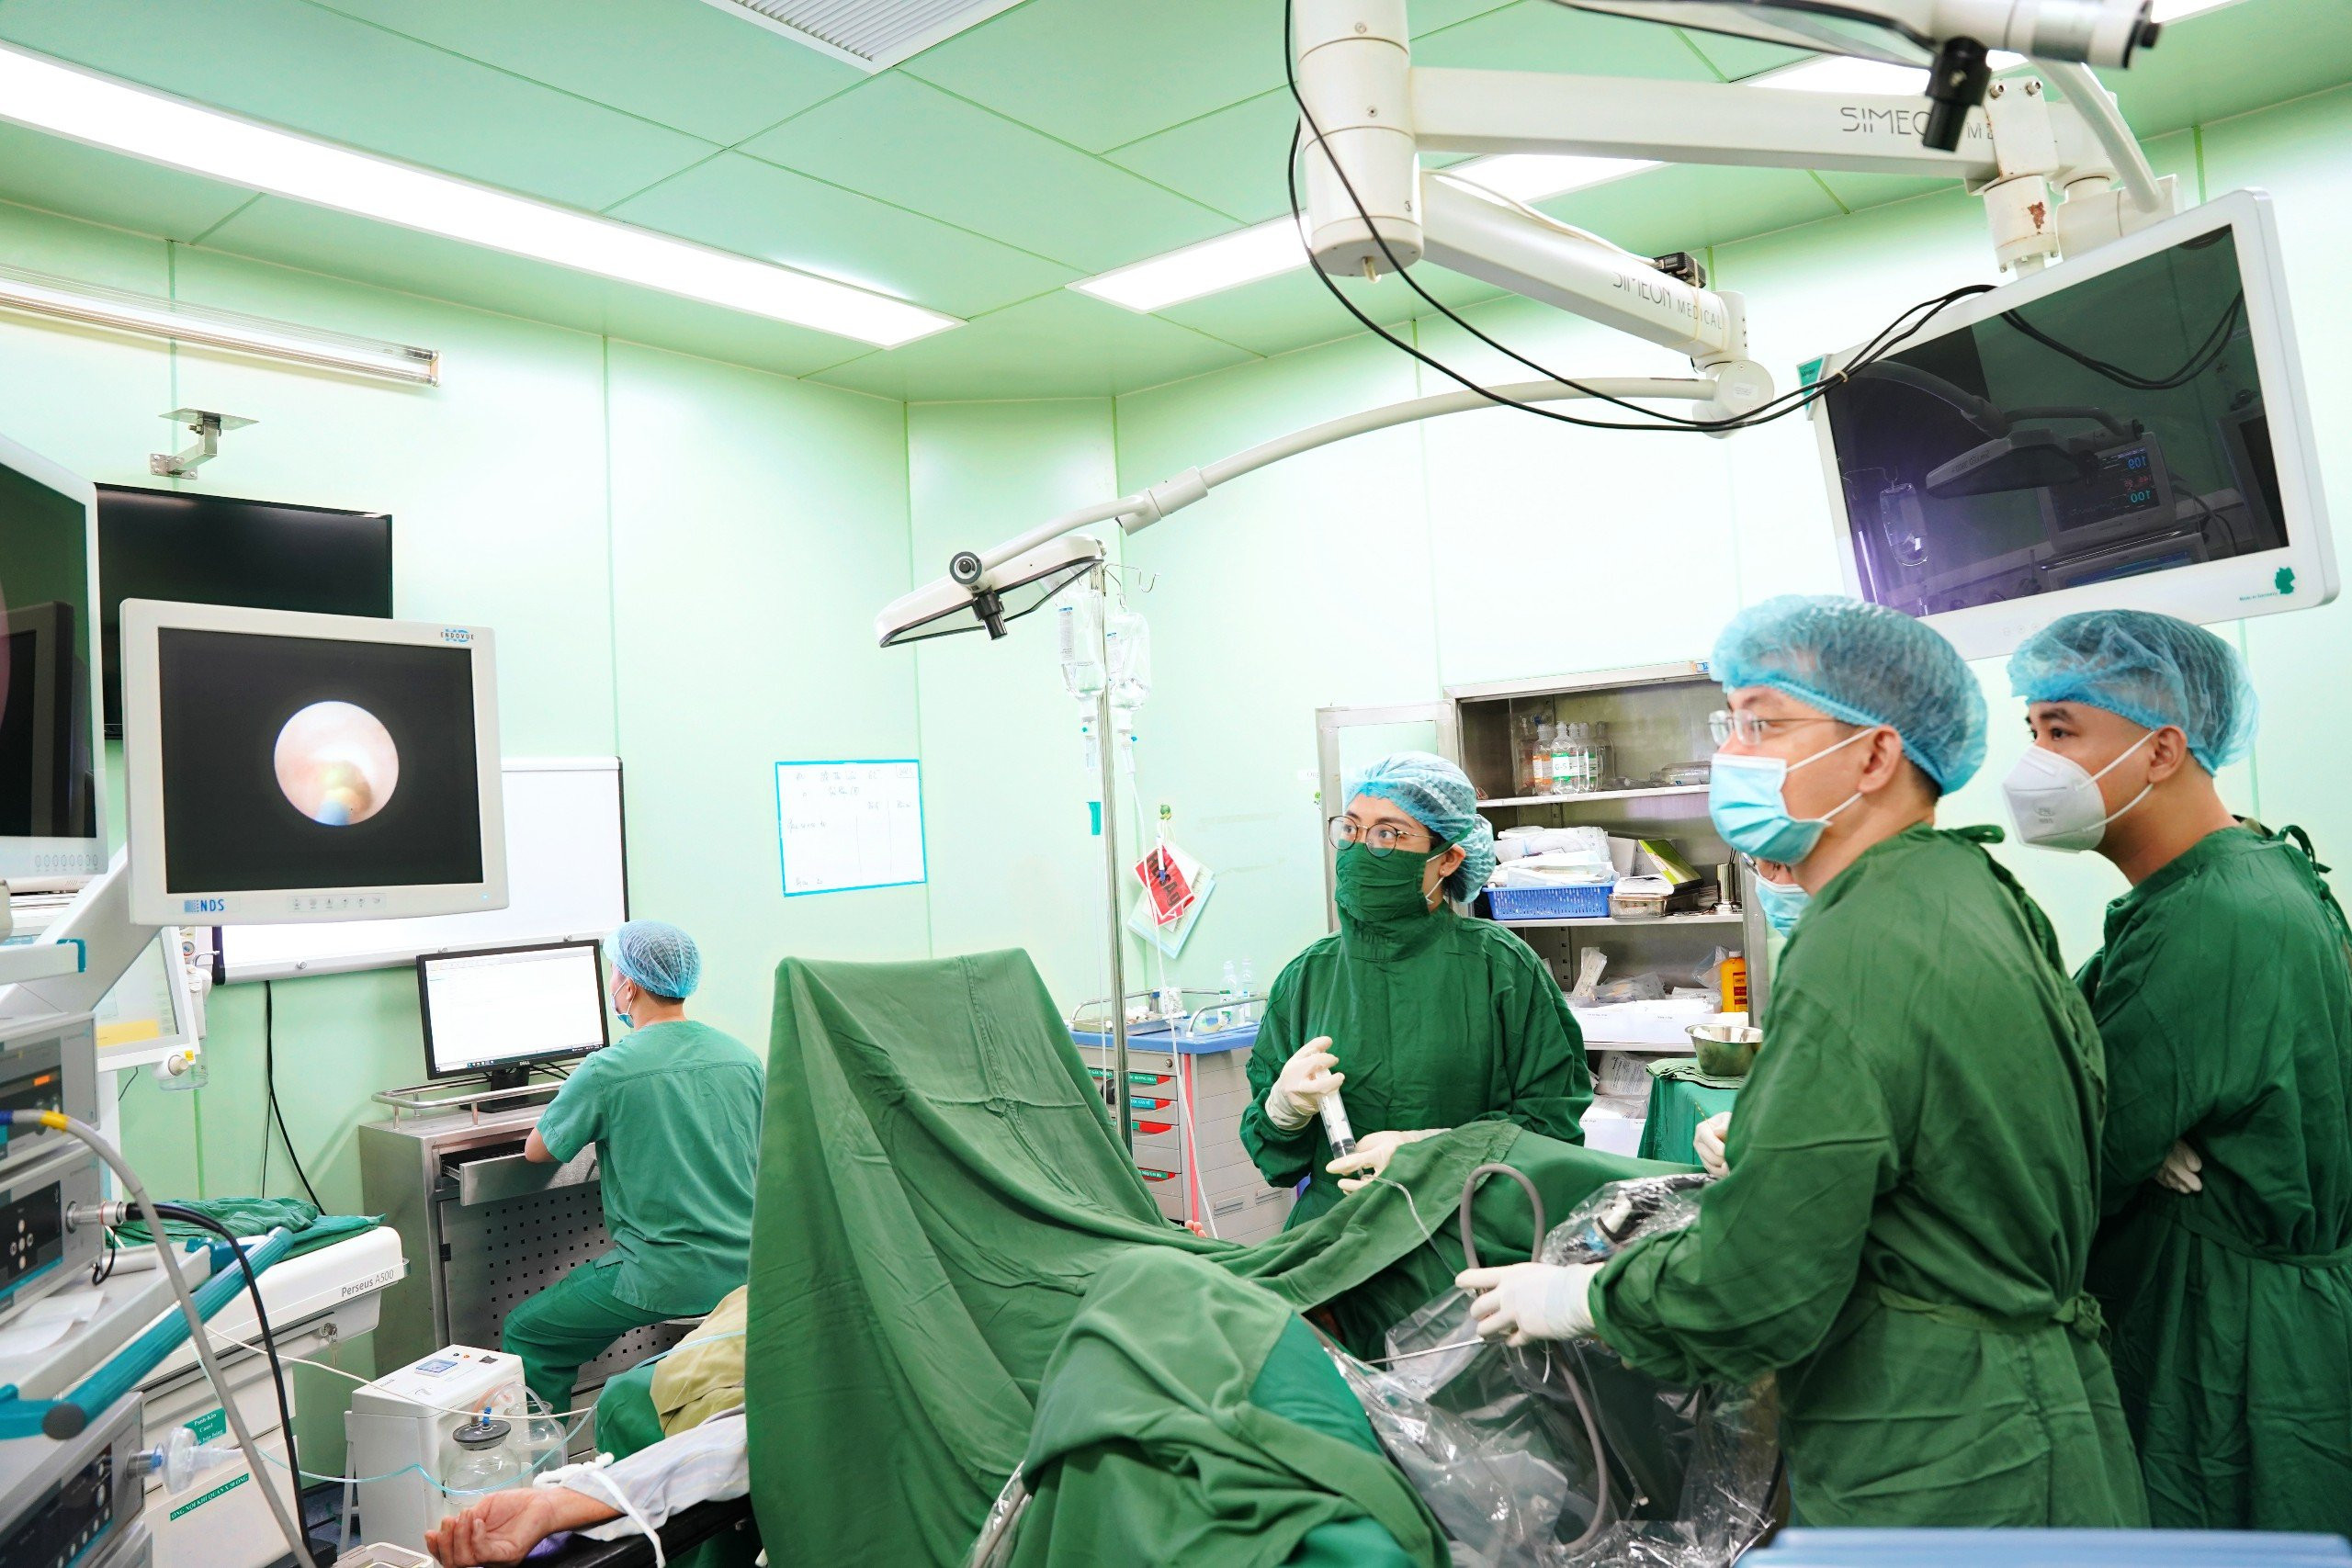 Bệnh viện ứng dụng kỹ thuật phẫu thuật nội soi tán sỏi thận bằng ống mềm thường quy, hiệu quả và an toàn. Ảnh PV.jpg